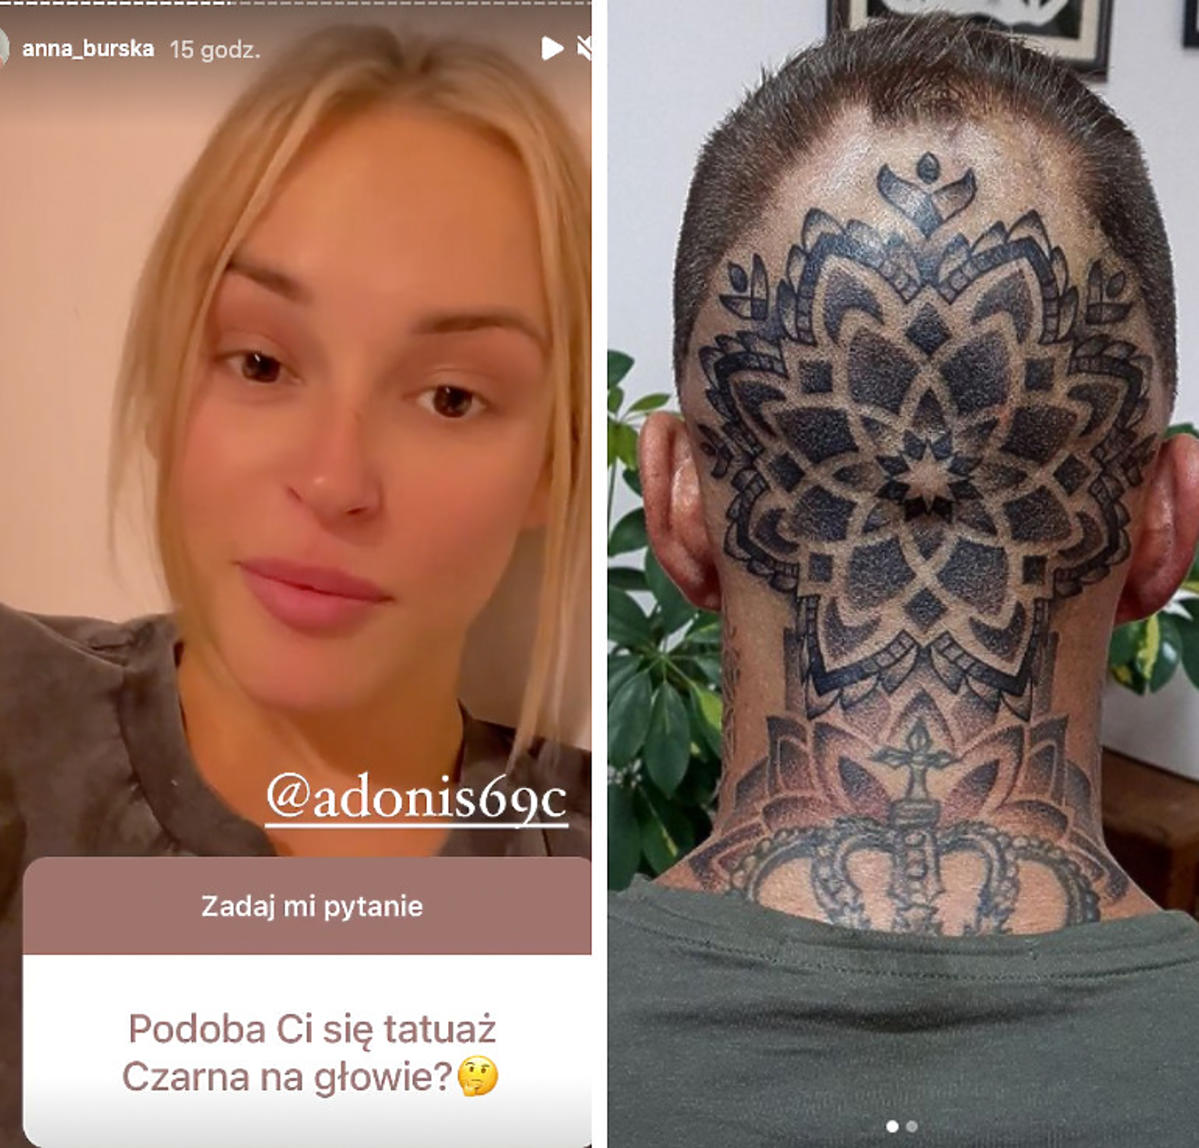 Ania komentuje tatuaż czarka na głowie